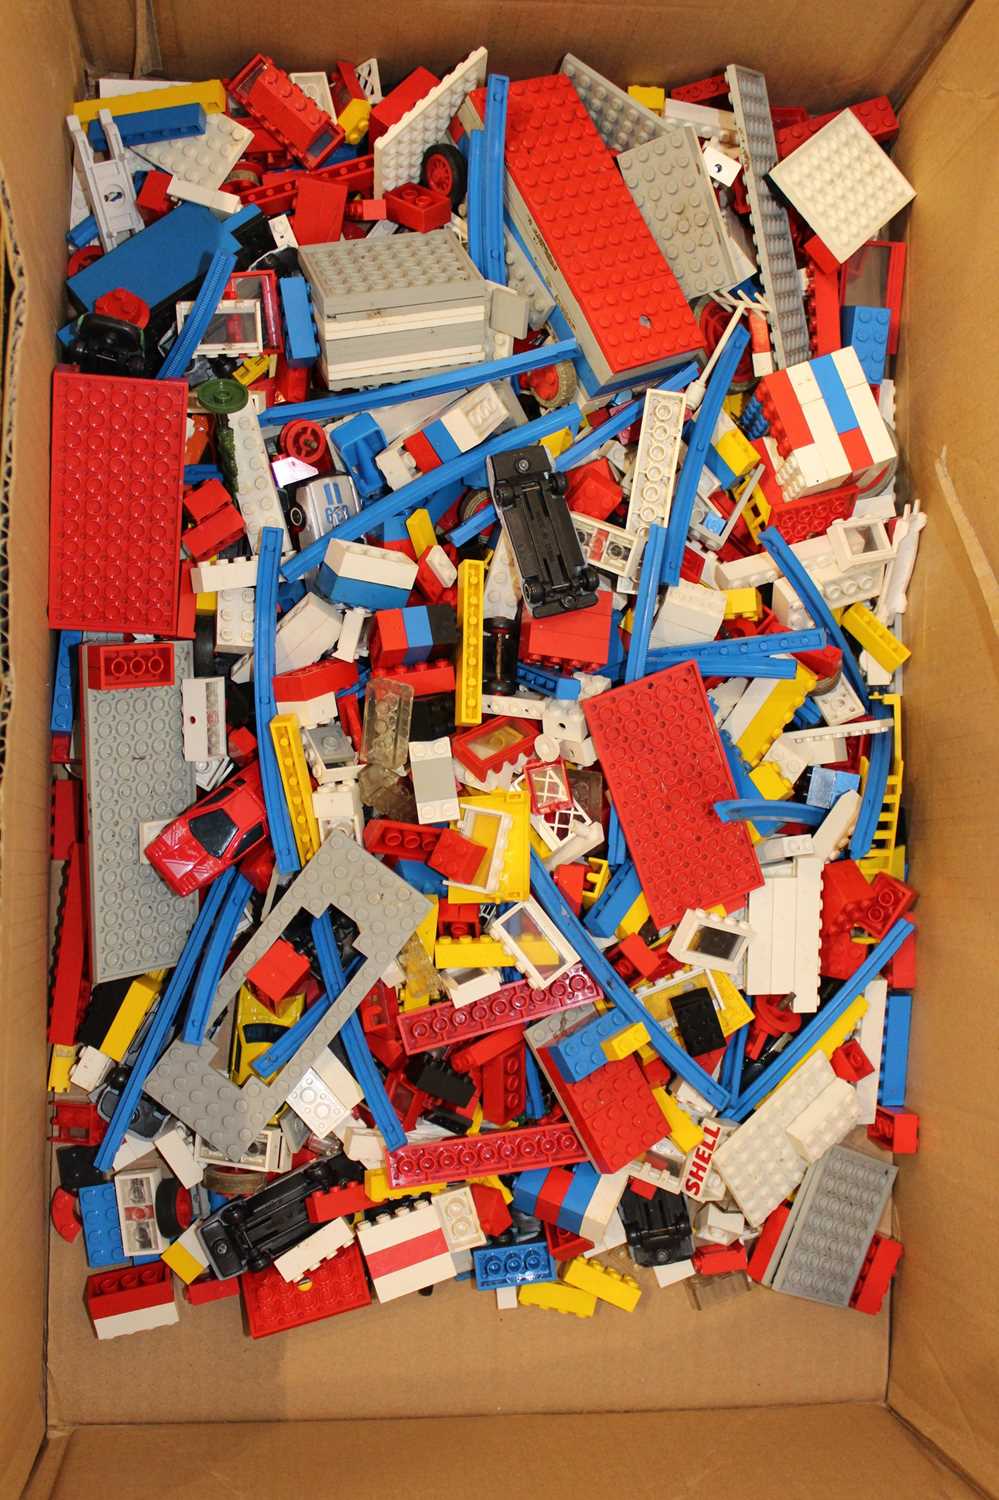 A box of loose Lego